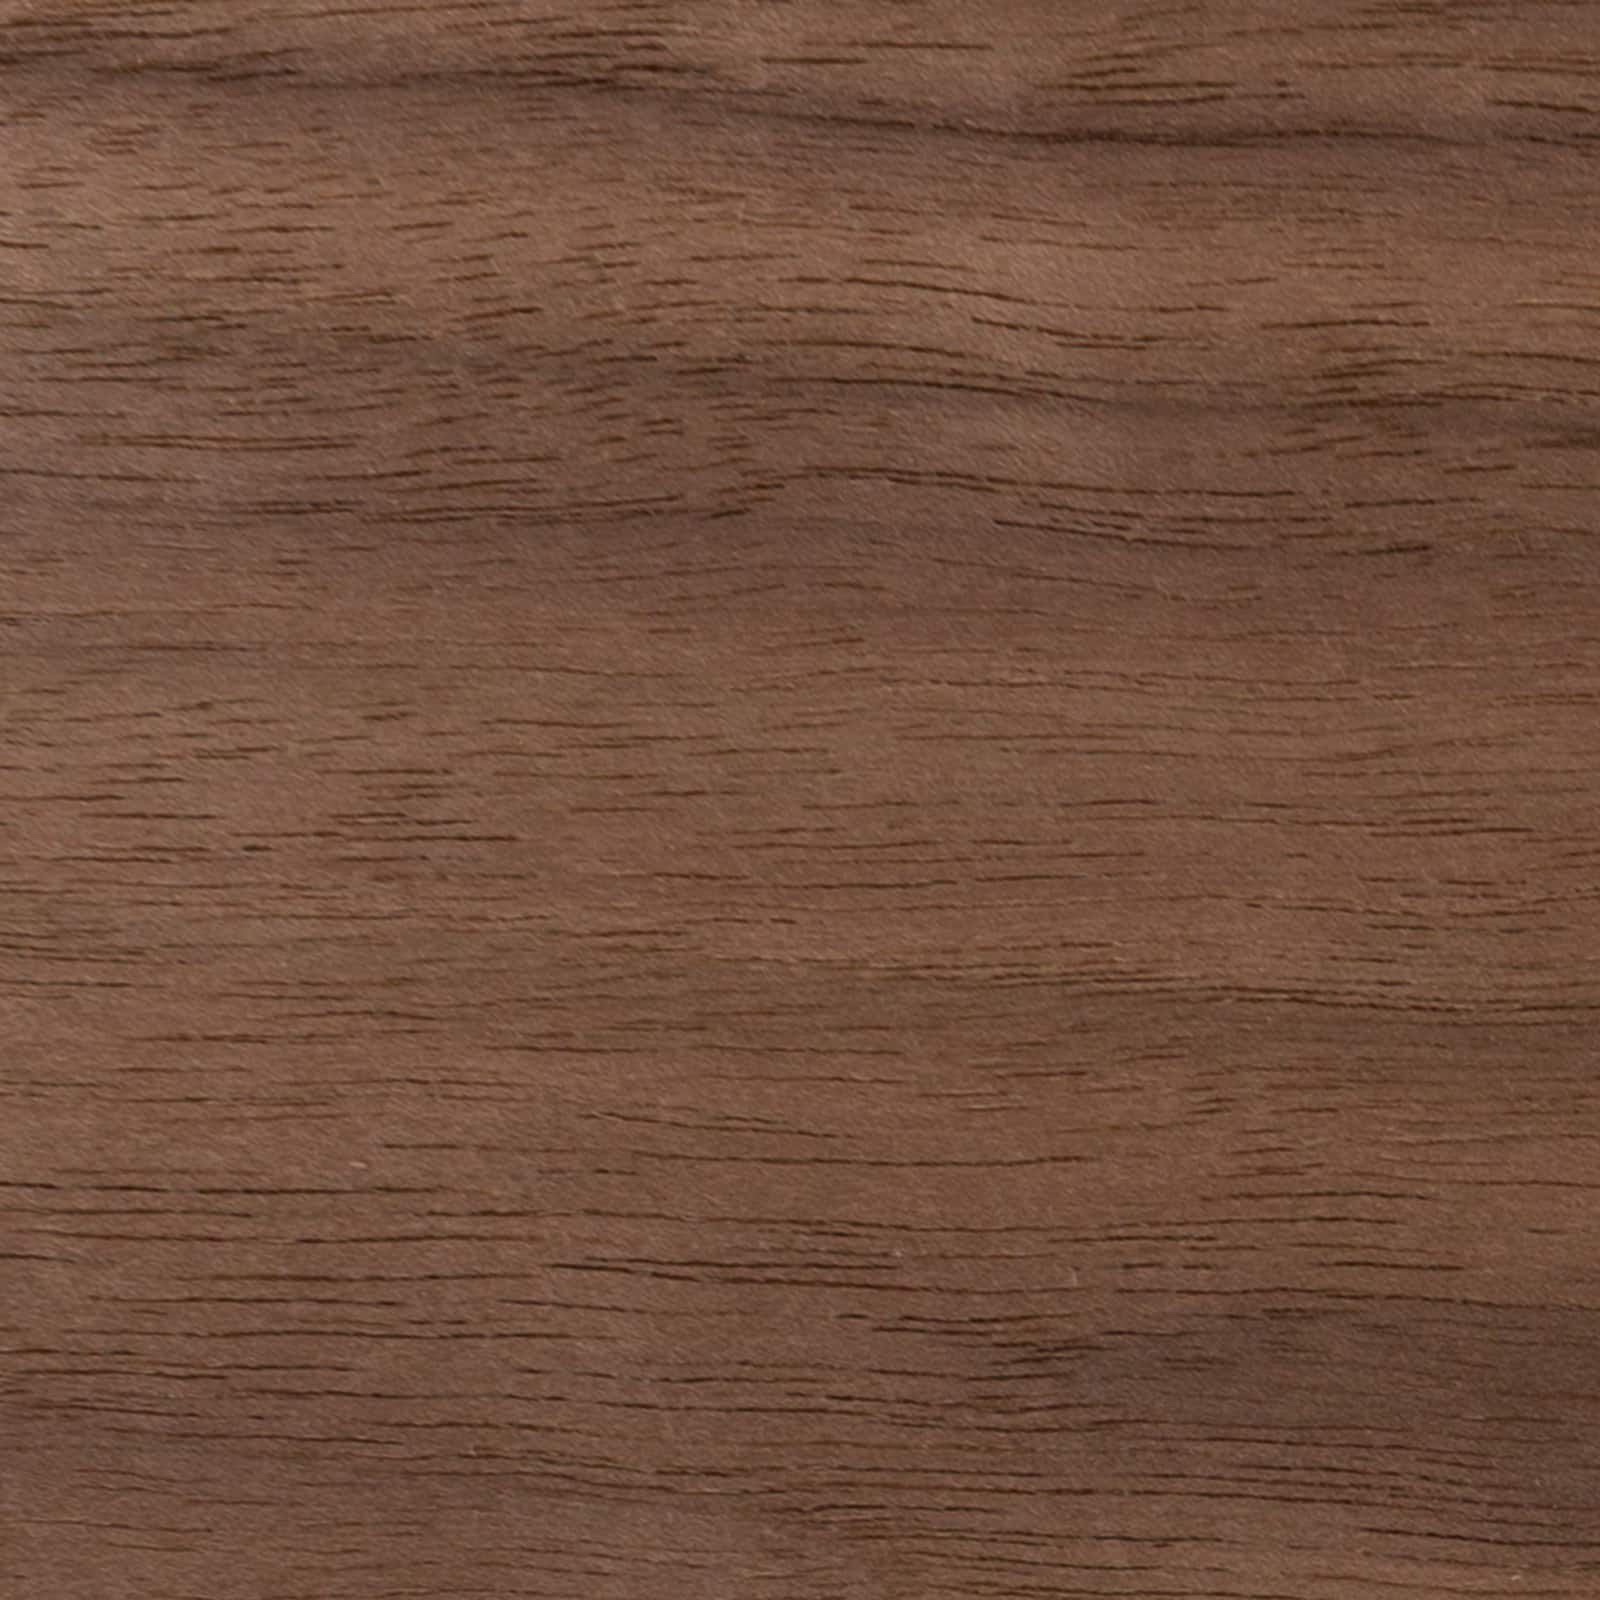 Cricut&#xAE; Natural Wood Walnut Veneer